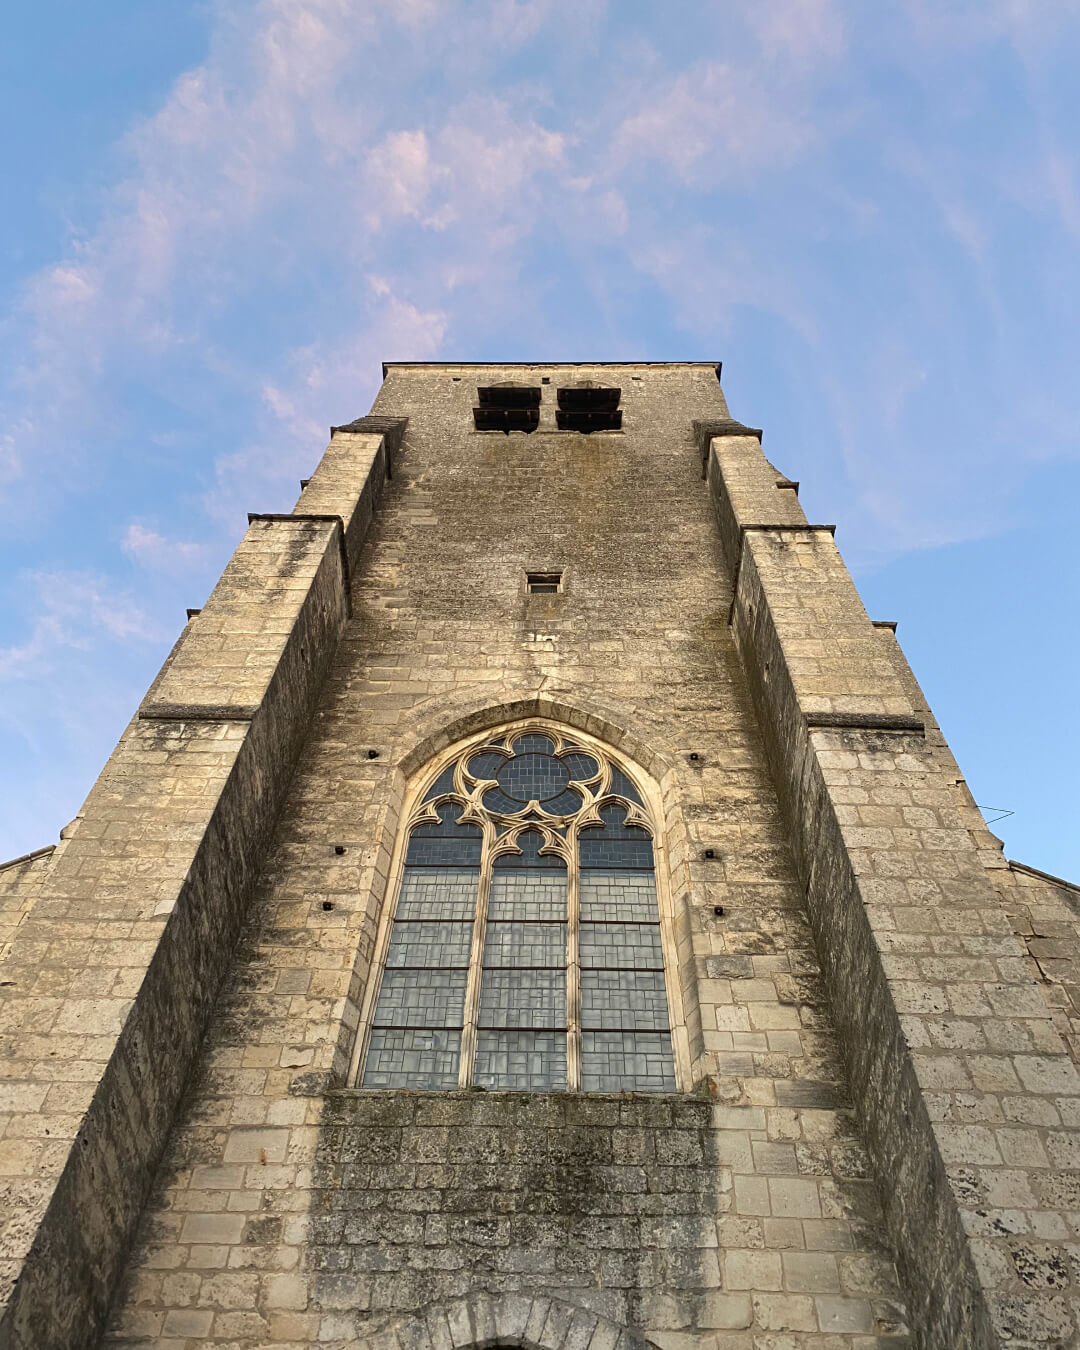 Vue du clocher d'une église située dans le département du Cher, en contre-plongée.